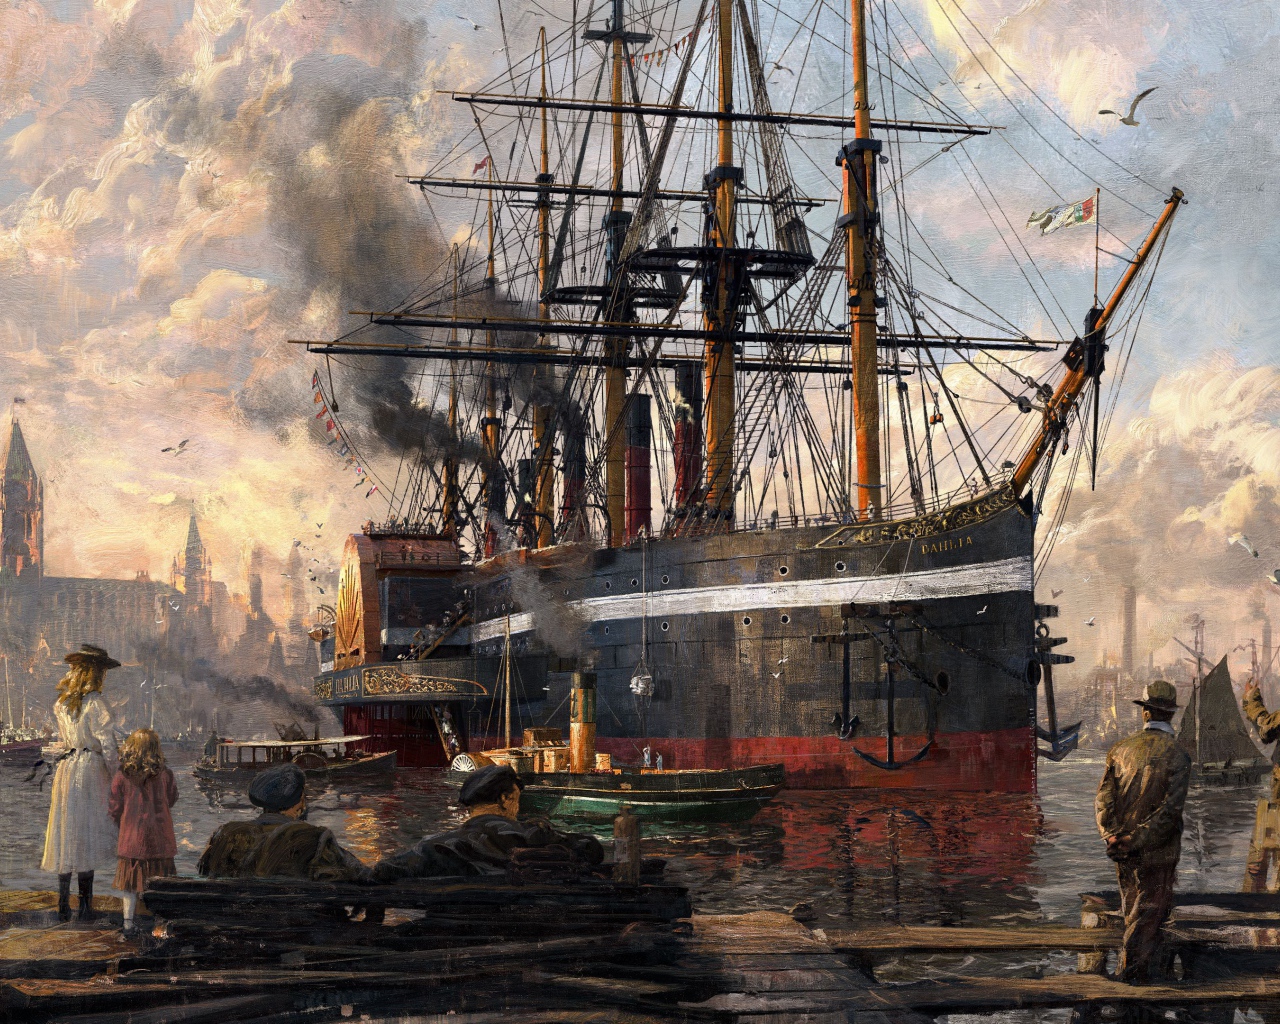 Корабль в порту кадр компьютерной игры Anno 1800, 2019 года